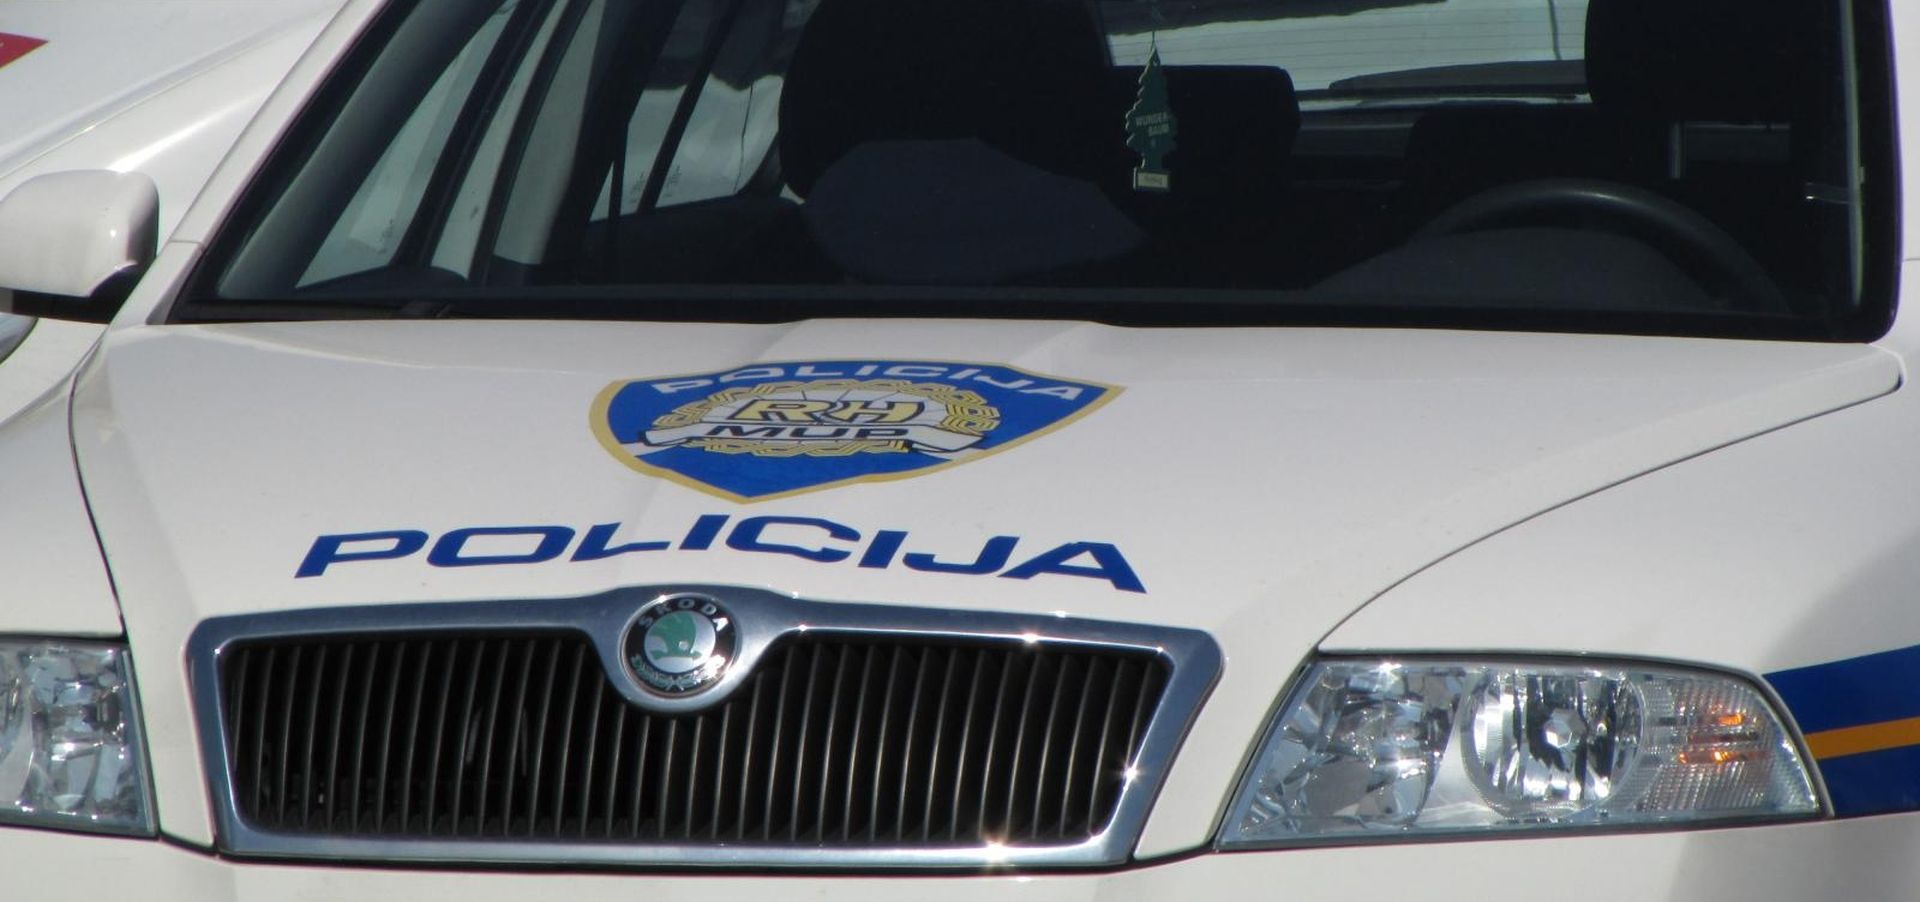 23.03.2011., Split - Policijsko vozilo, ilustracija.
Photo: Ivo Cagalj/PIXSELL